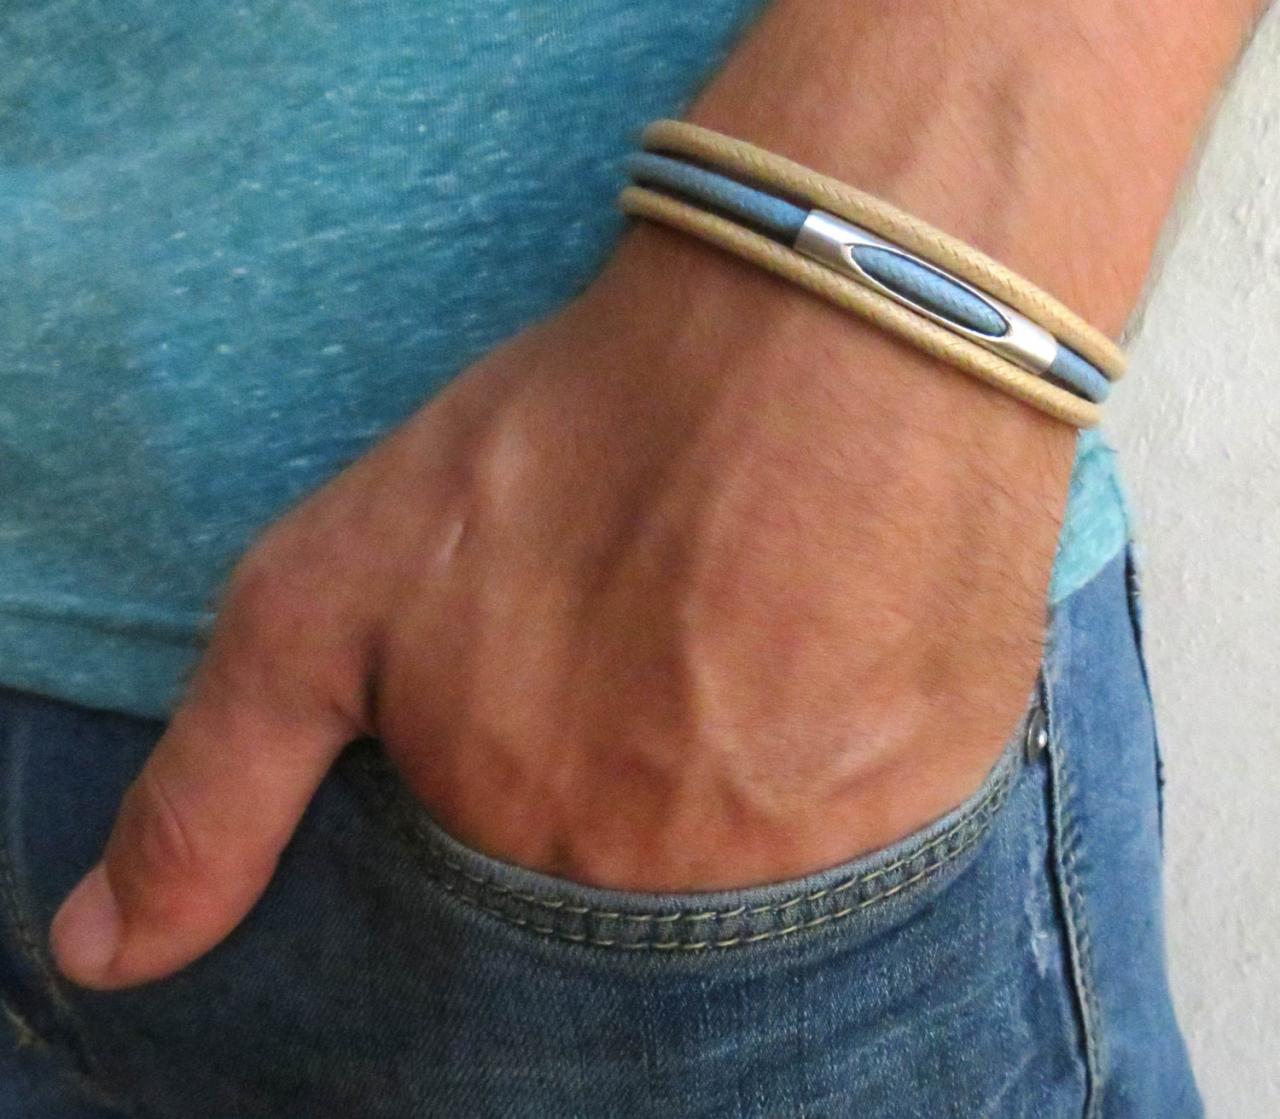 Men's Bracelet - Men's Tube Bracelet - Men's Beige And Blue Bracelet - Men's Jewelry - Bracelets For Men -